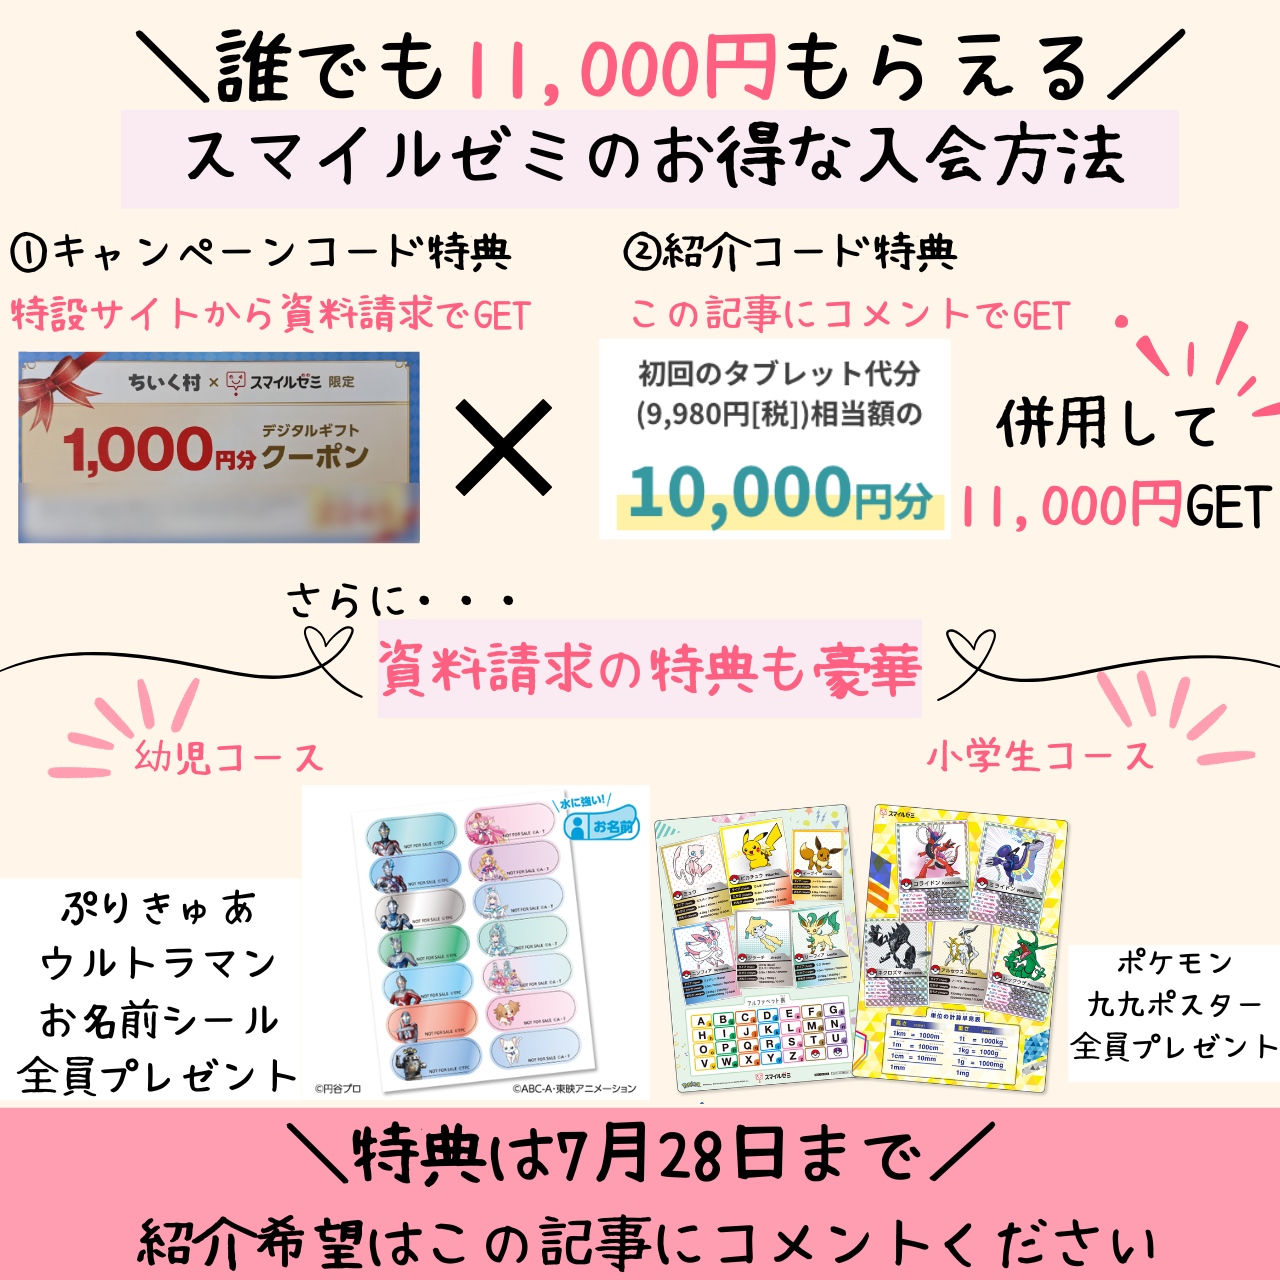 10,000円の紹介特典